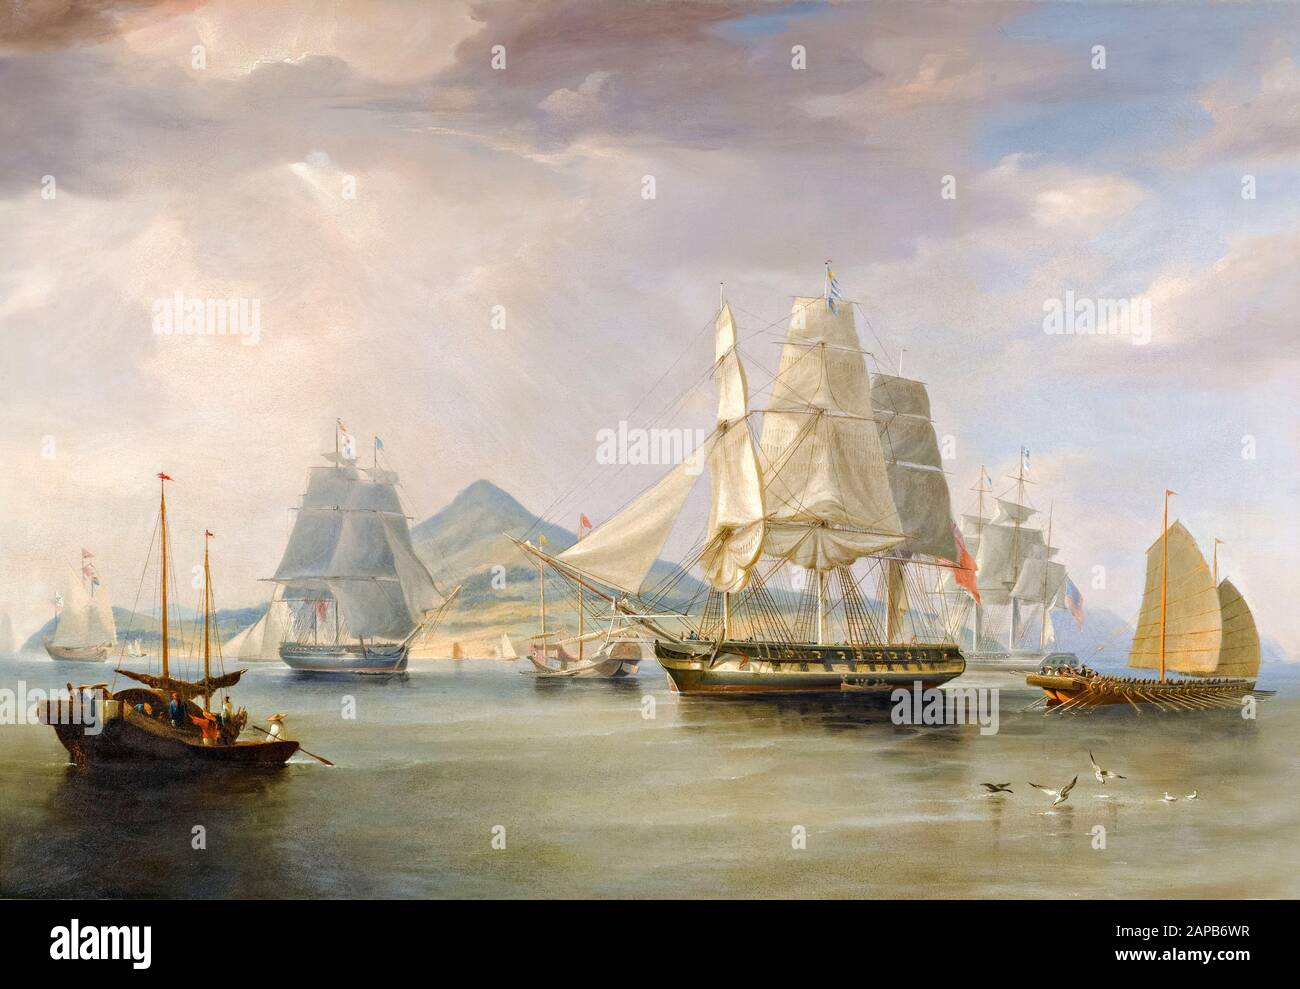 L'Opium est livré à Lintin, Chine, 1824, peinture de William John Huggins, après 1824 Banque D'Images